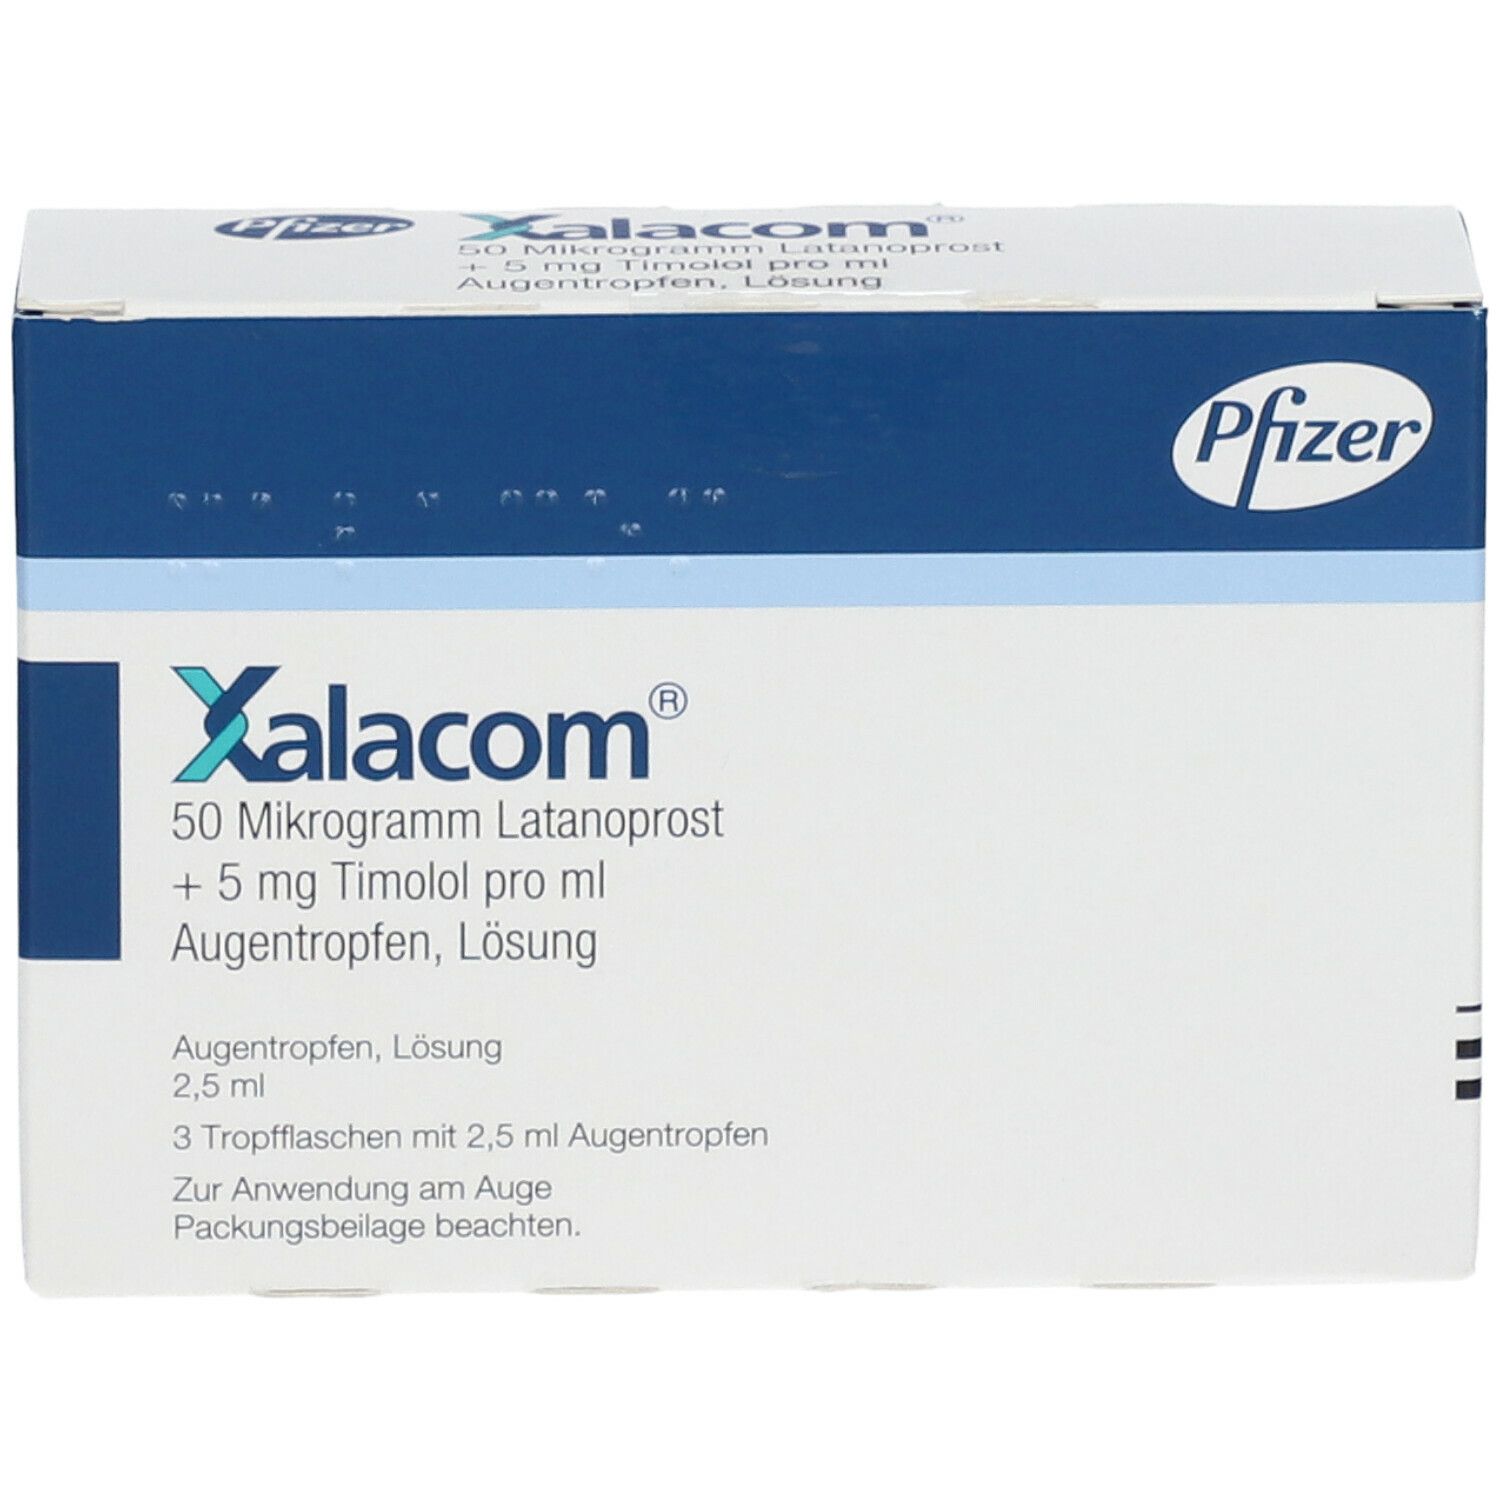 Xalacom® 50 µg Latanoprost + 5 mg Timolol pro ml